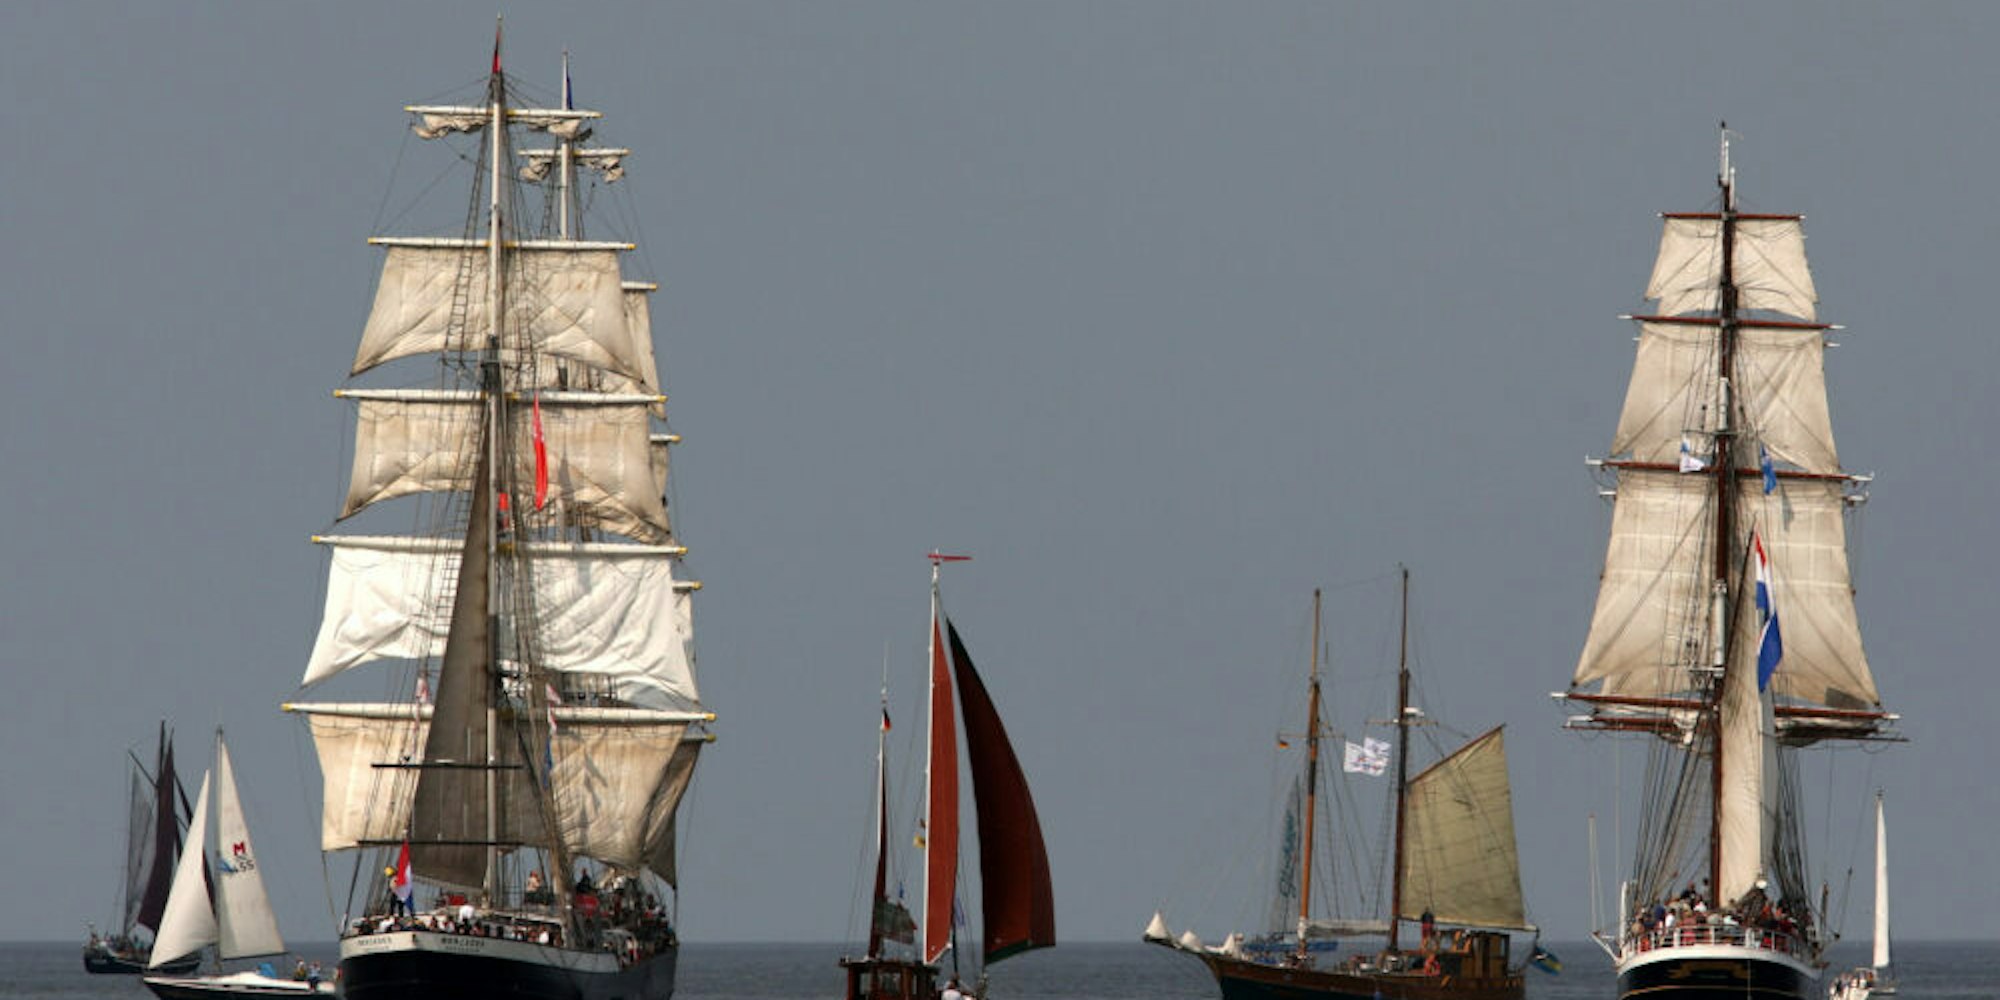 Häufig wird eine Hansestadt mit Seefahrt in Verbindung gebracht.